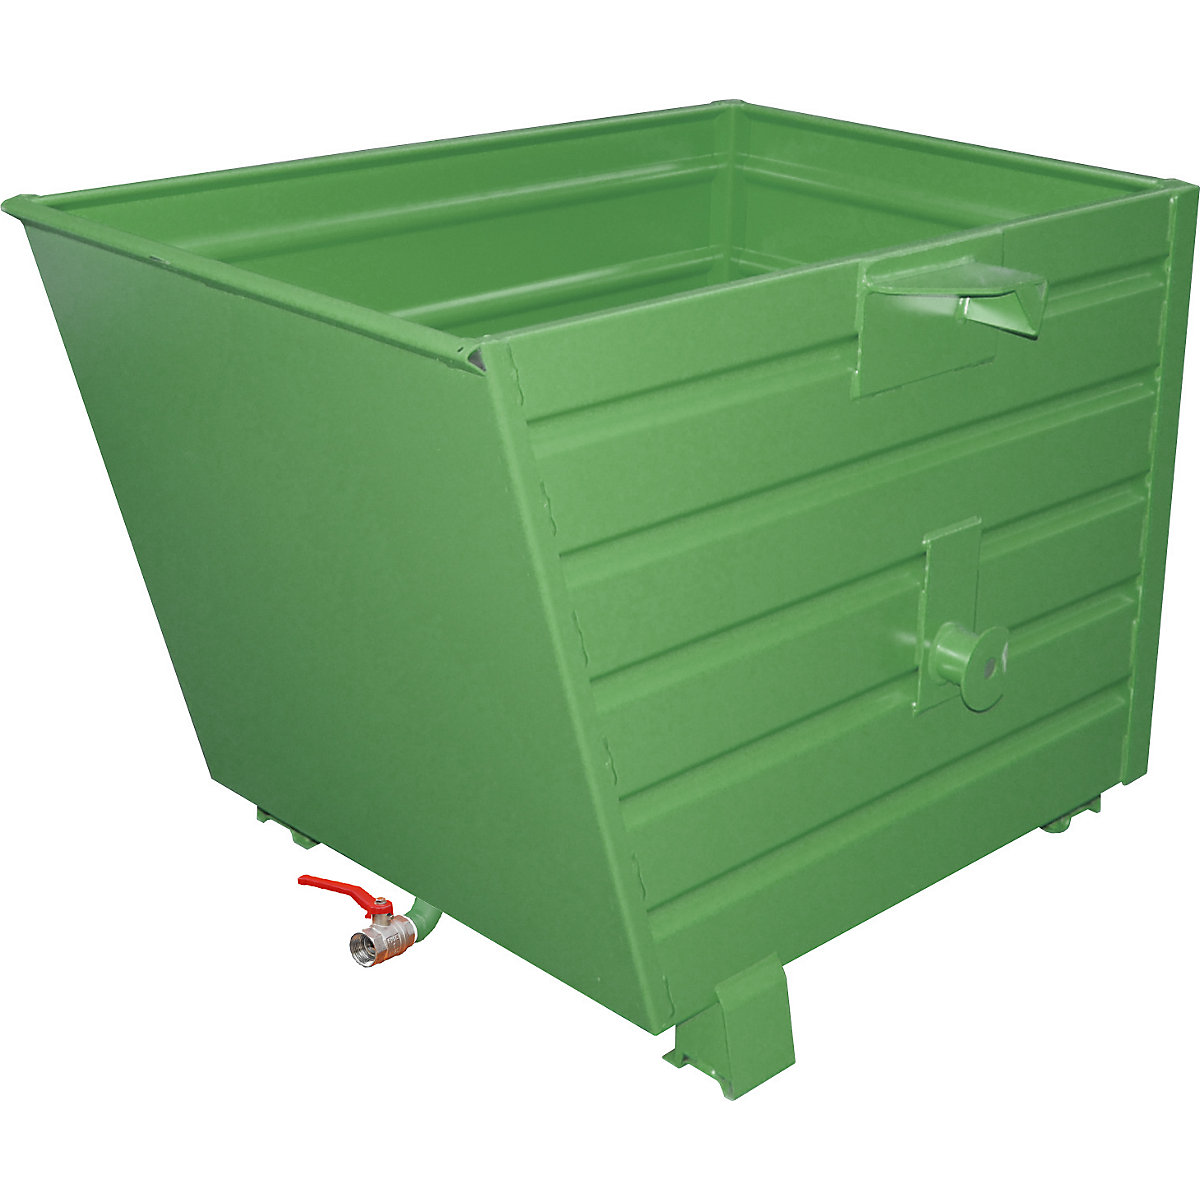 EUROKRAFTpro – Basculador empilhável para aparas, volume 0,7 m³, verde reseda